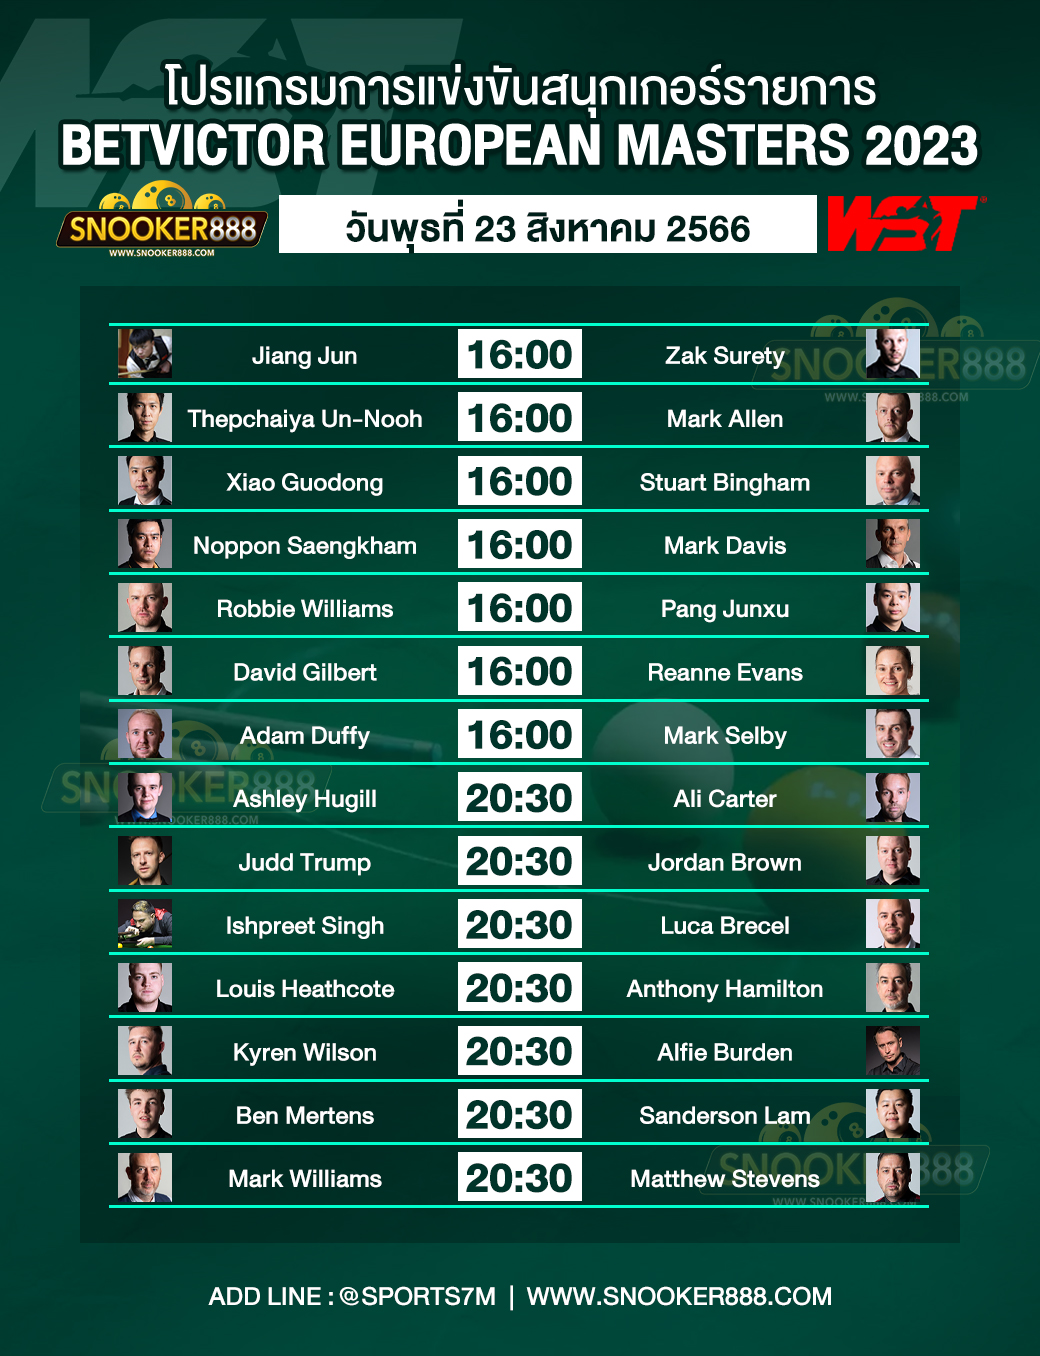 โปรแกรมการแข่งขันสนุกเกอร์ BetVictor European Masters 2023 วันที่ 23 ส.ค. 66